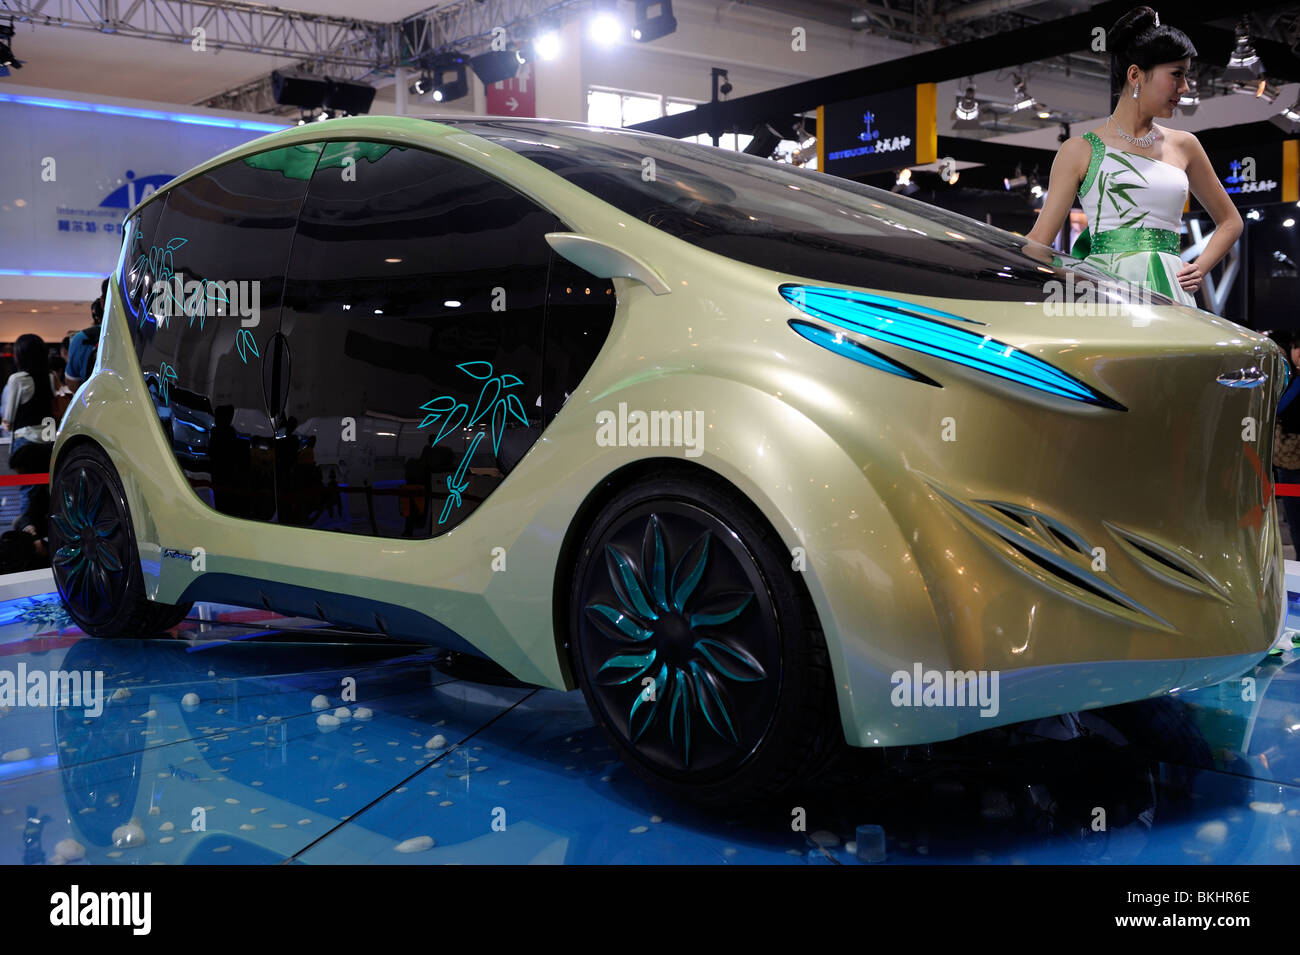 IAT (Domanda Internazionale Technology) 'Zu' concept car elettrica a Pechino Auto Show 2010. Foto Stock